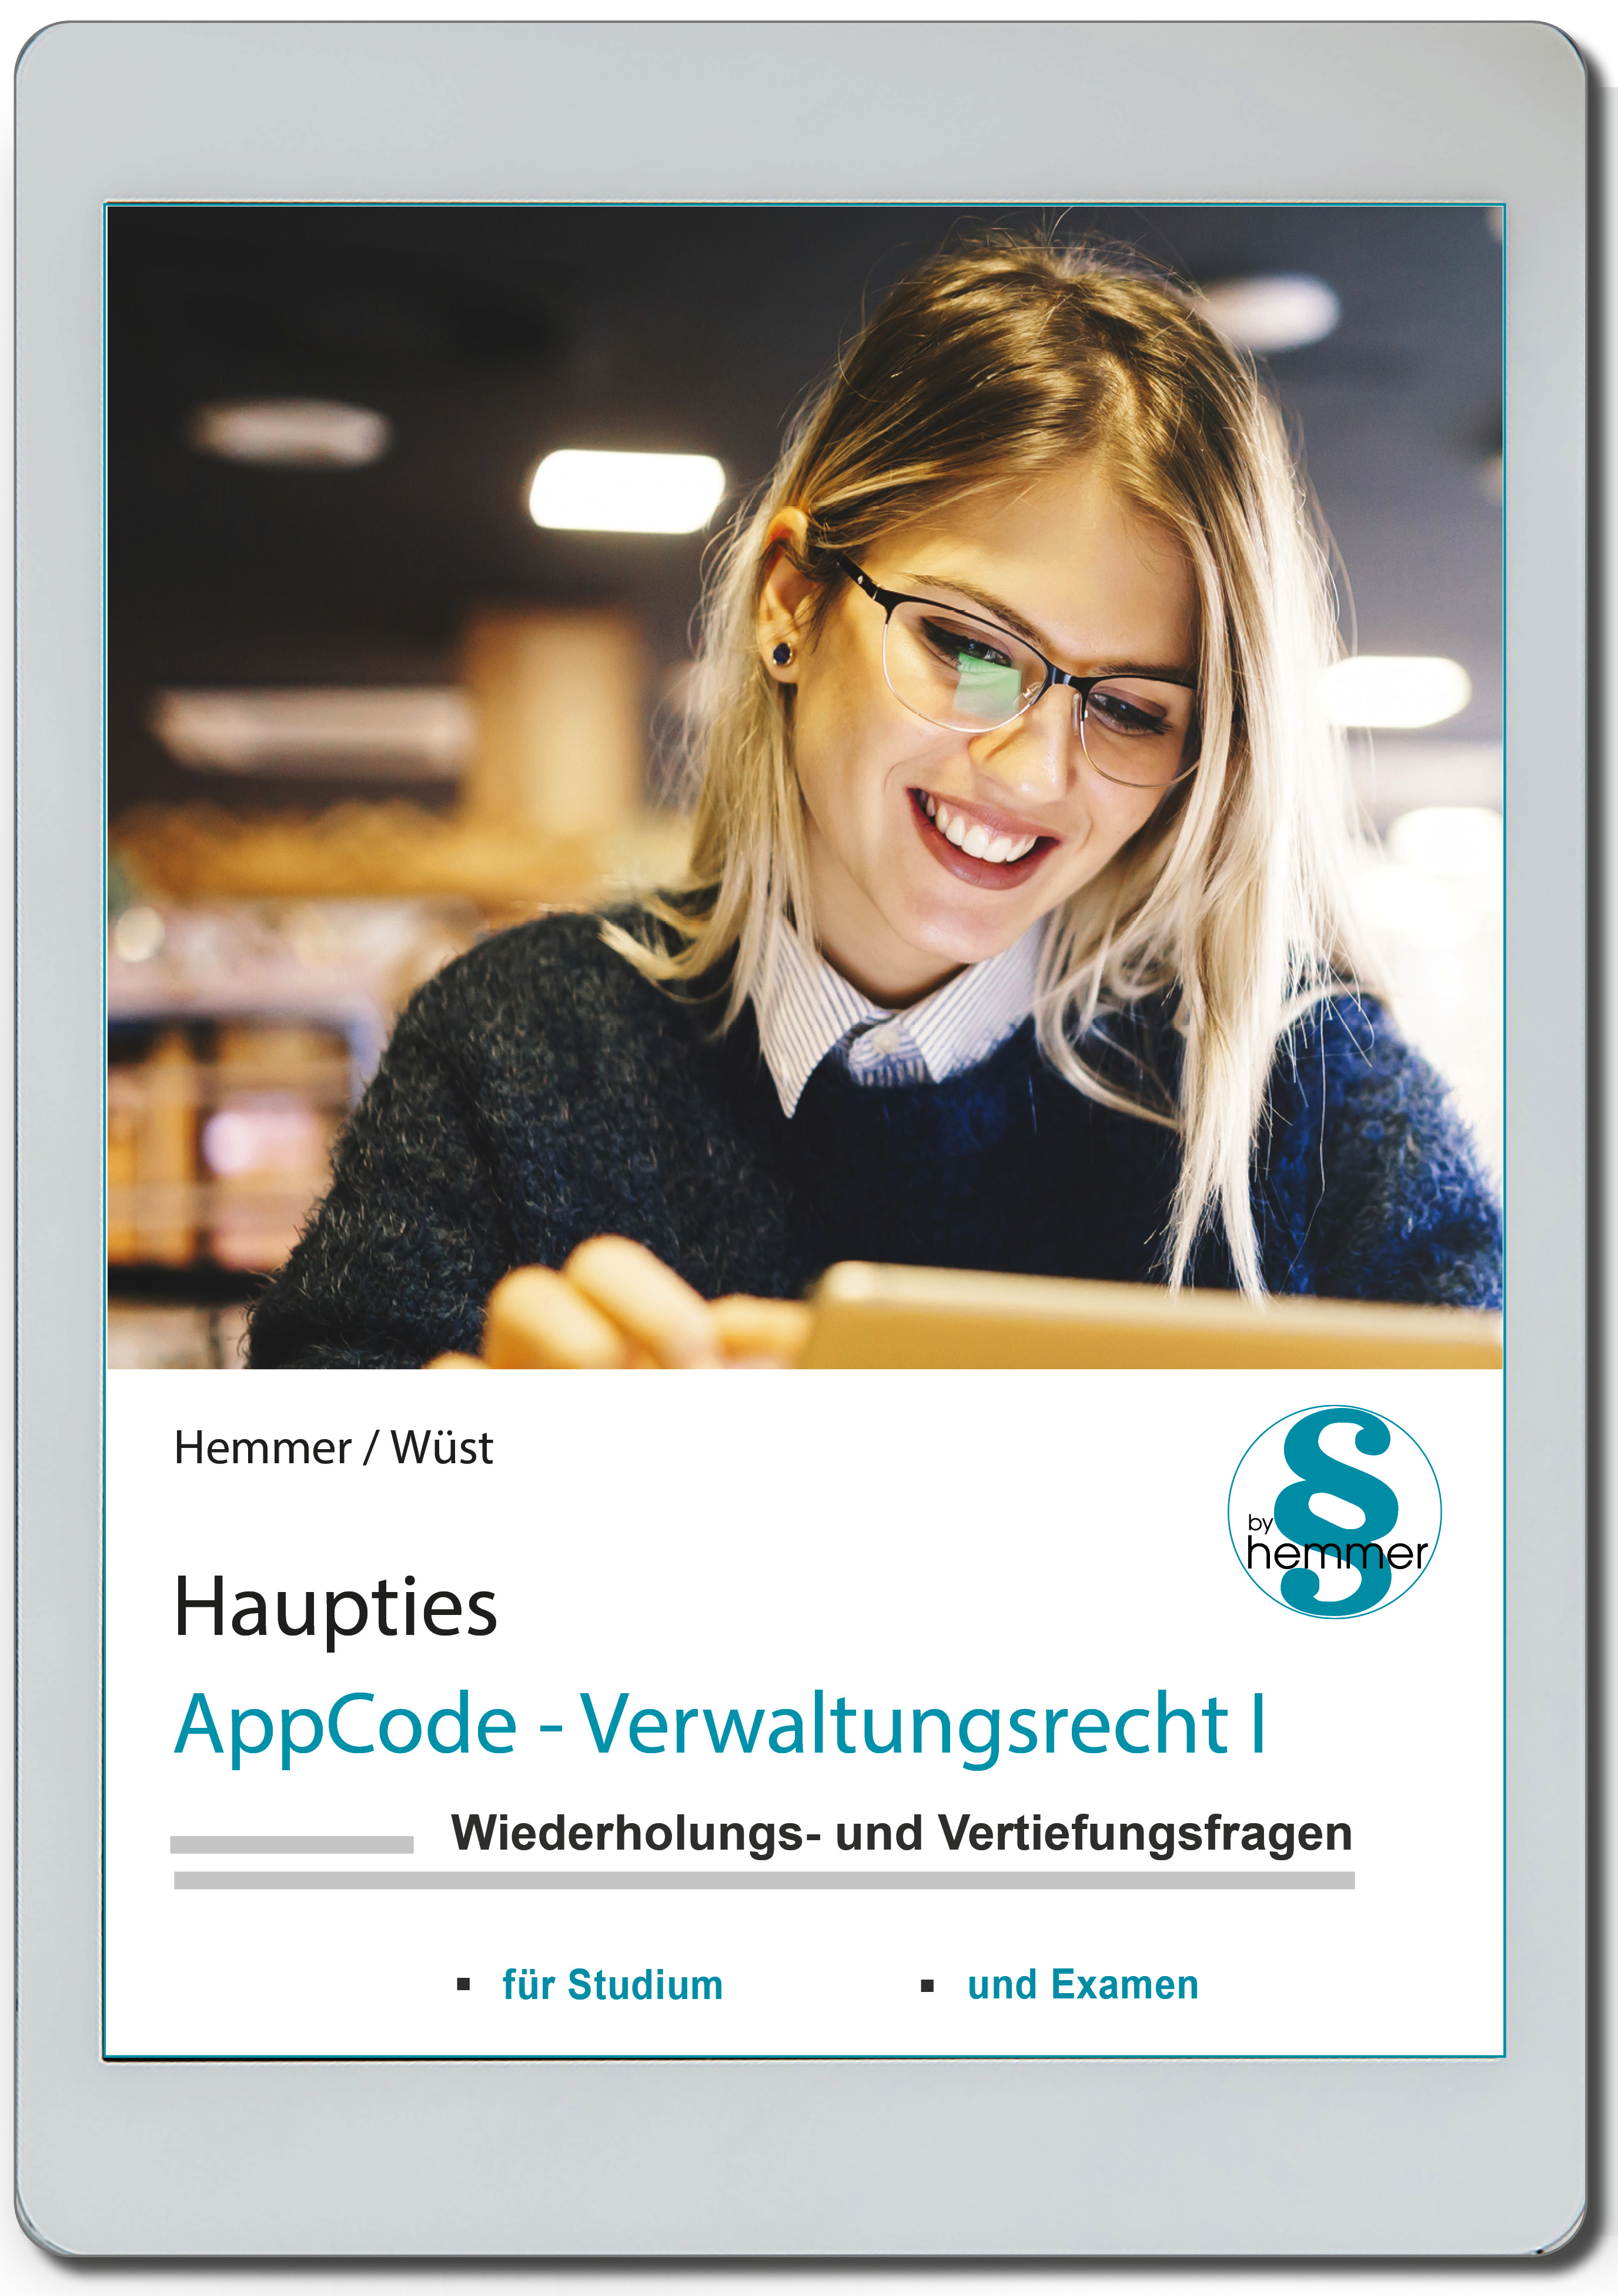 AppCode - haupties - Verwaltungsrecht I